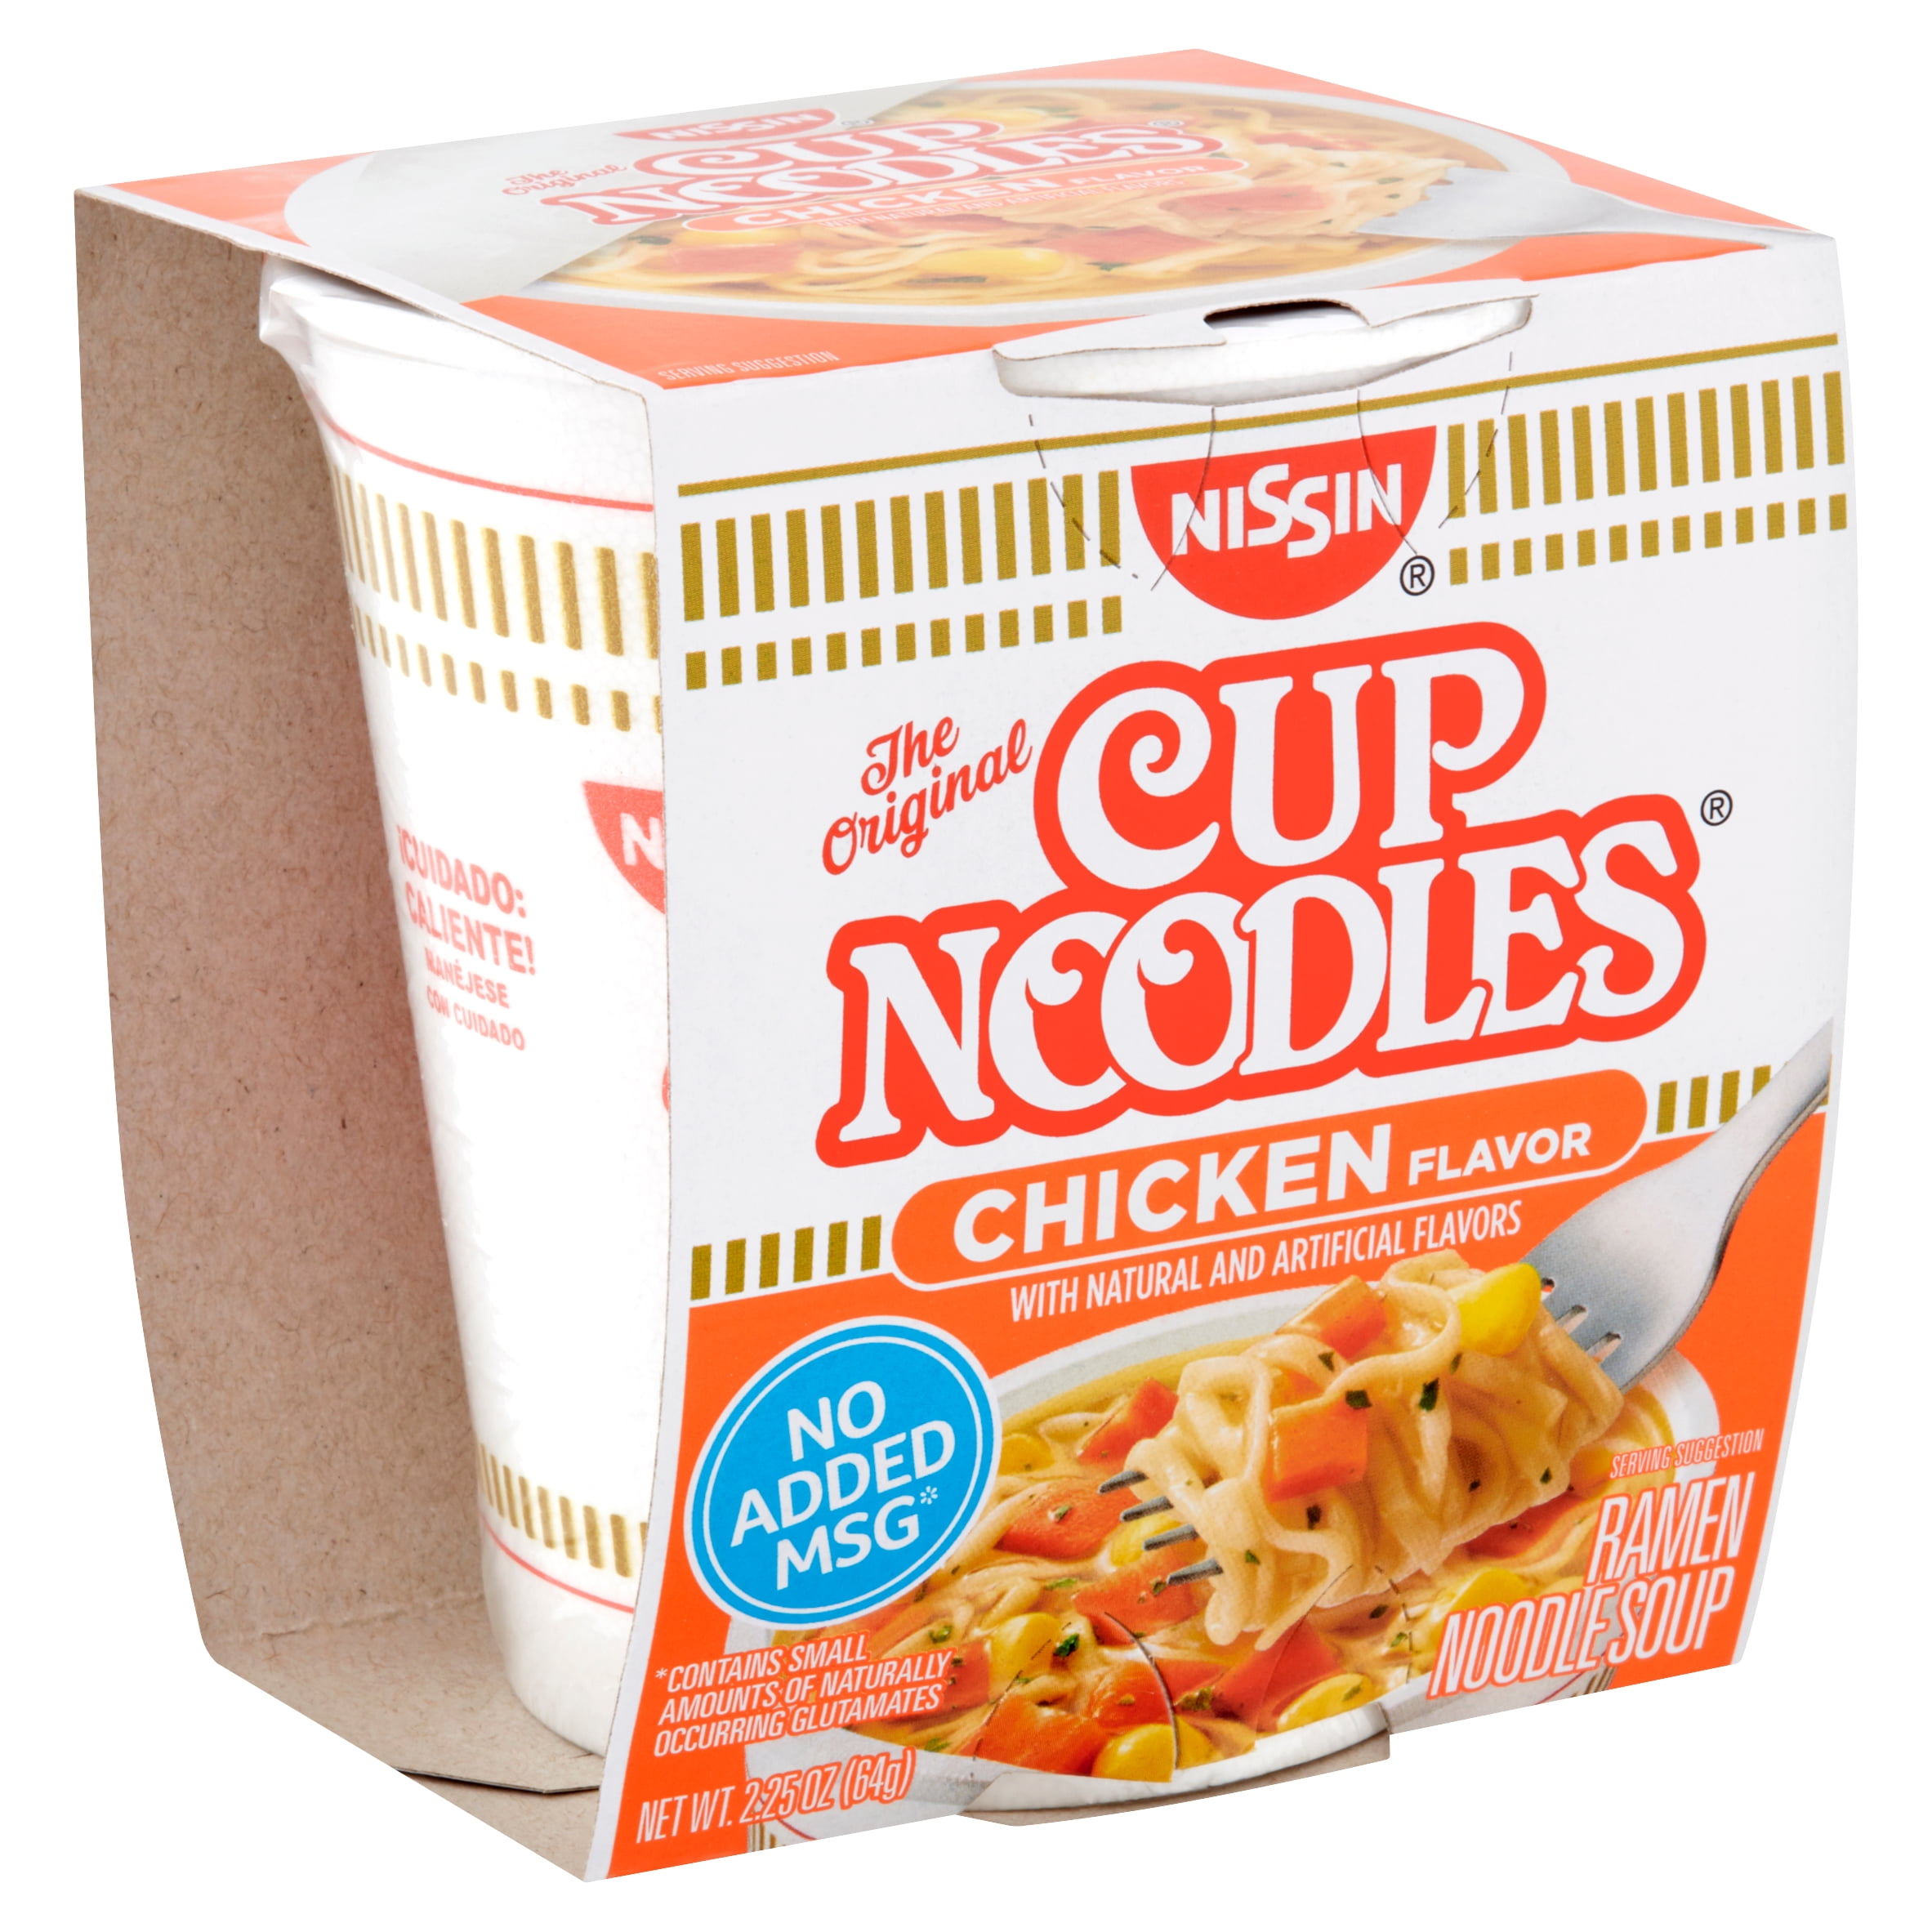 Nissin The Original Cup Noodles Chicken Flavor Ramen Noodle Soup 2 25 Oz